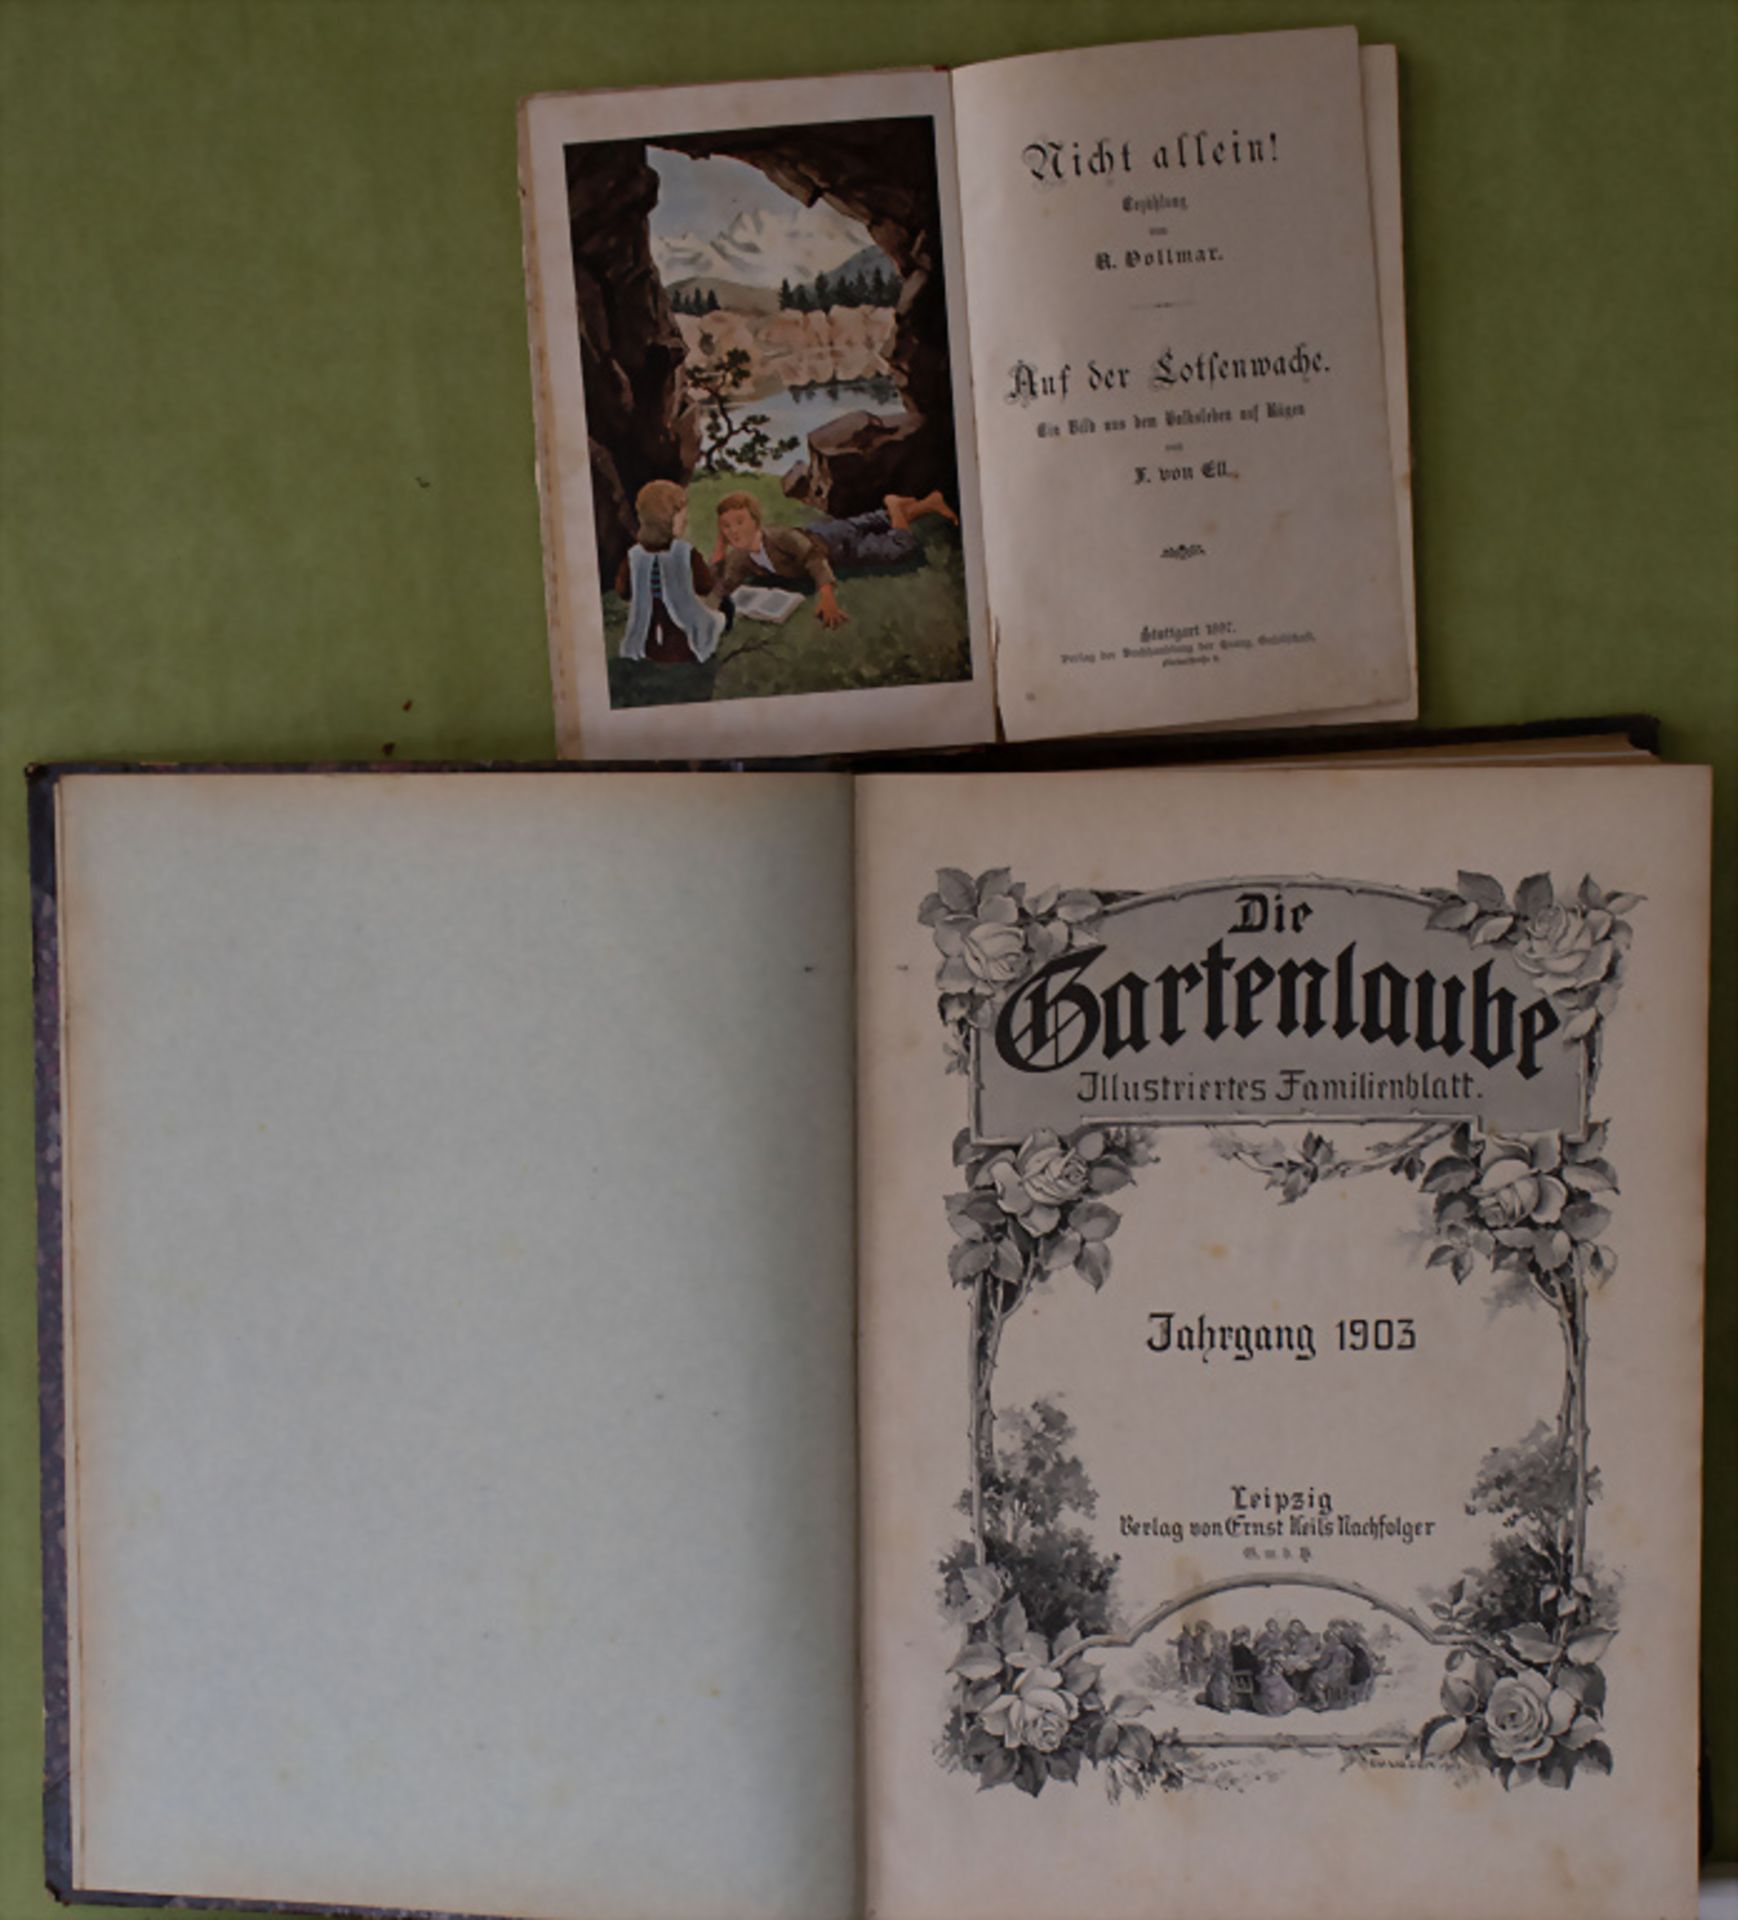 Sammelband 'Die Gartenlaube', Jahrgang 1903